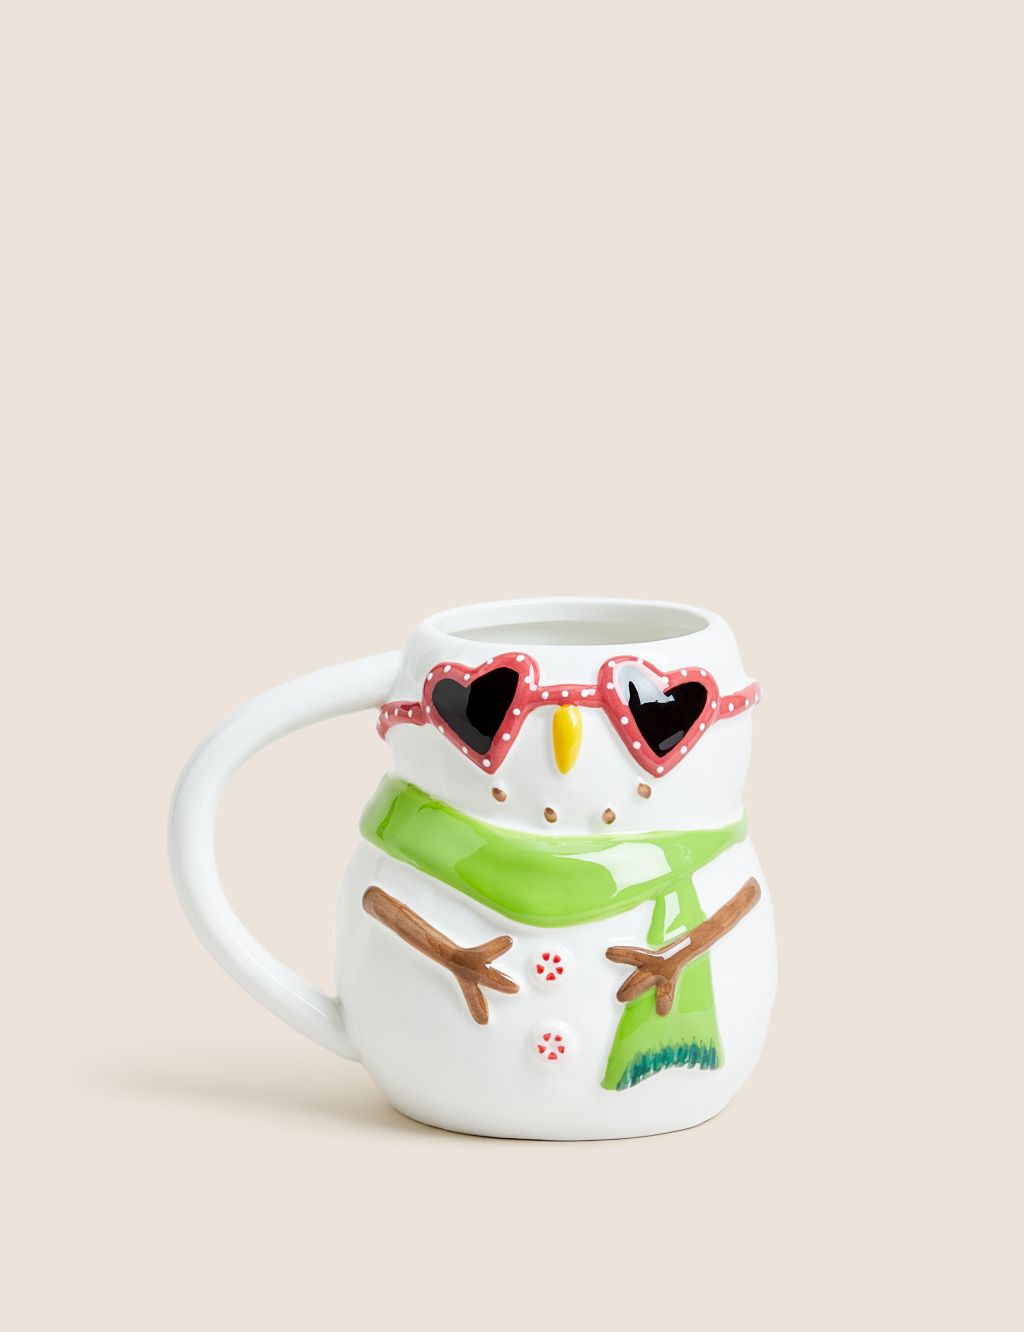 Snowman Mug image 1